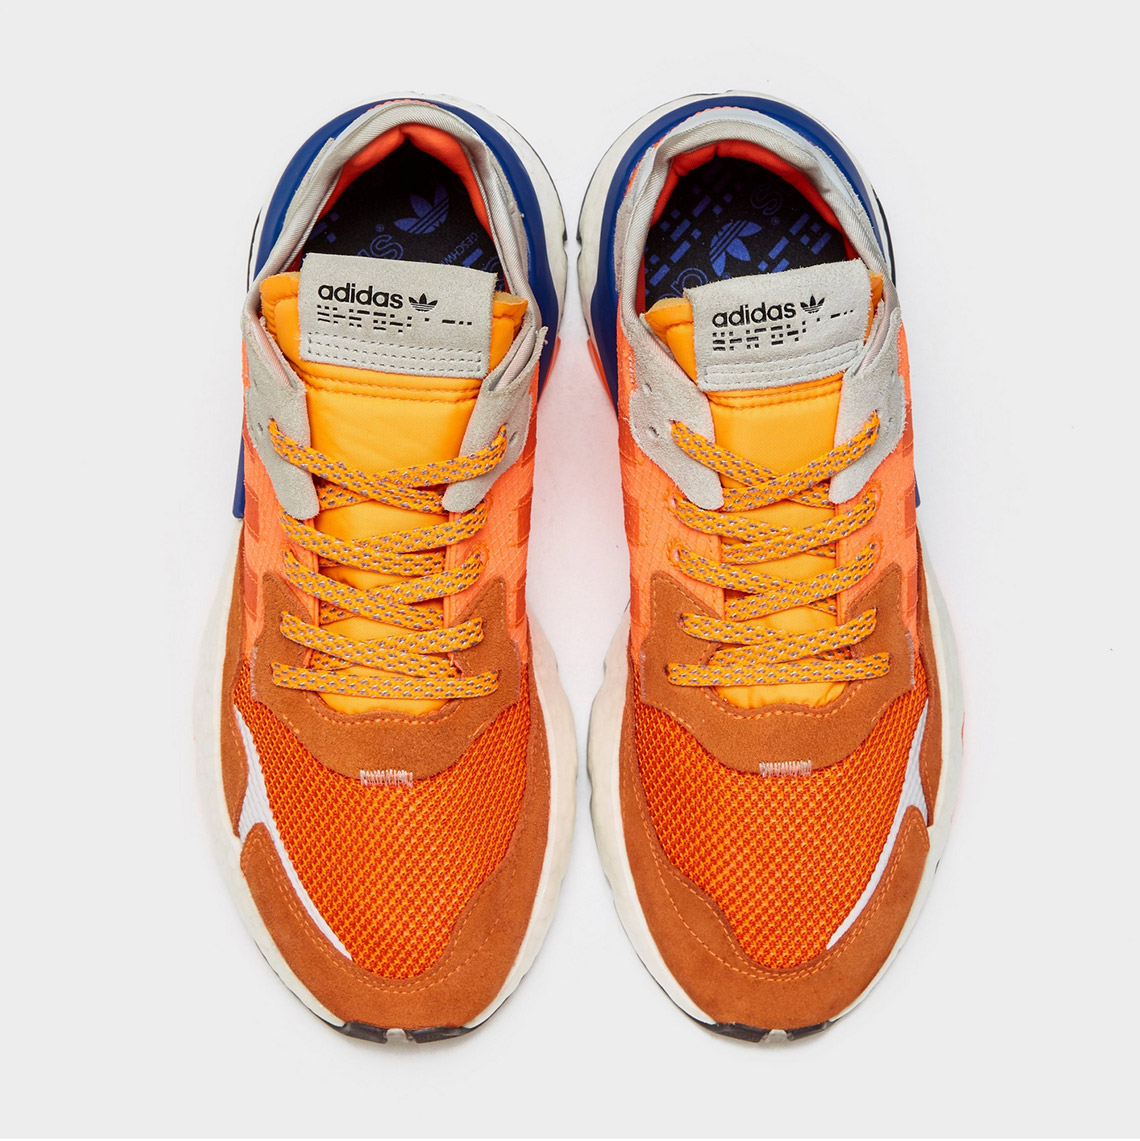 adidas Nite Jogger Goku G26313 Release Info SneakerNews.com